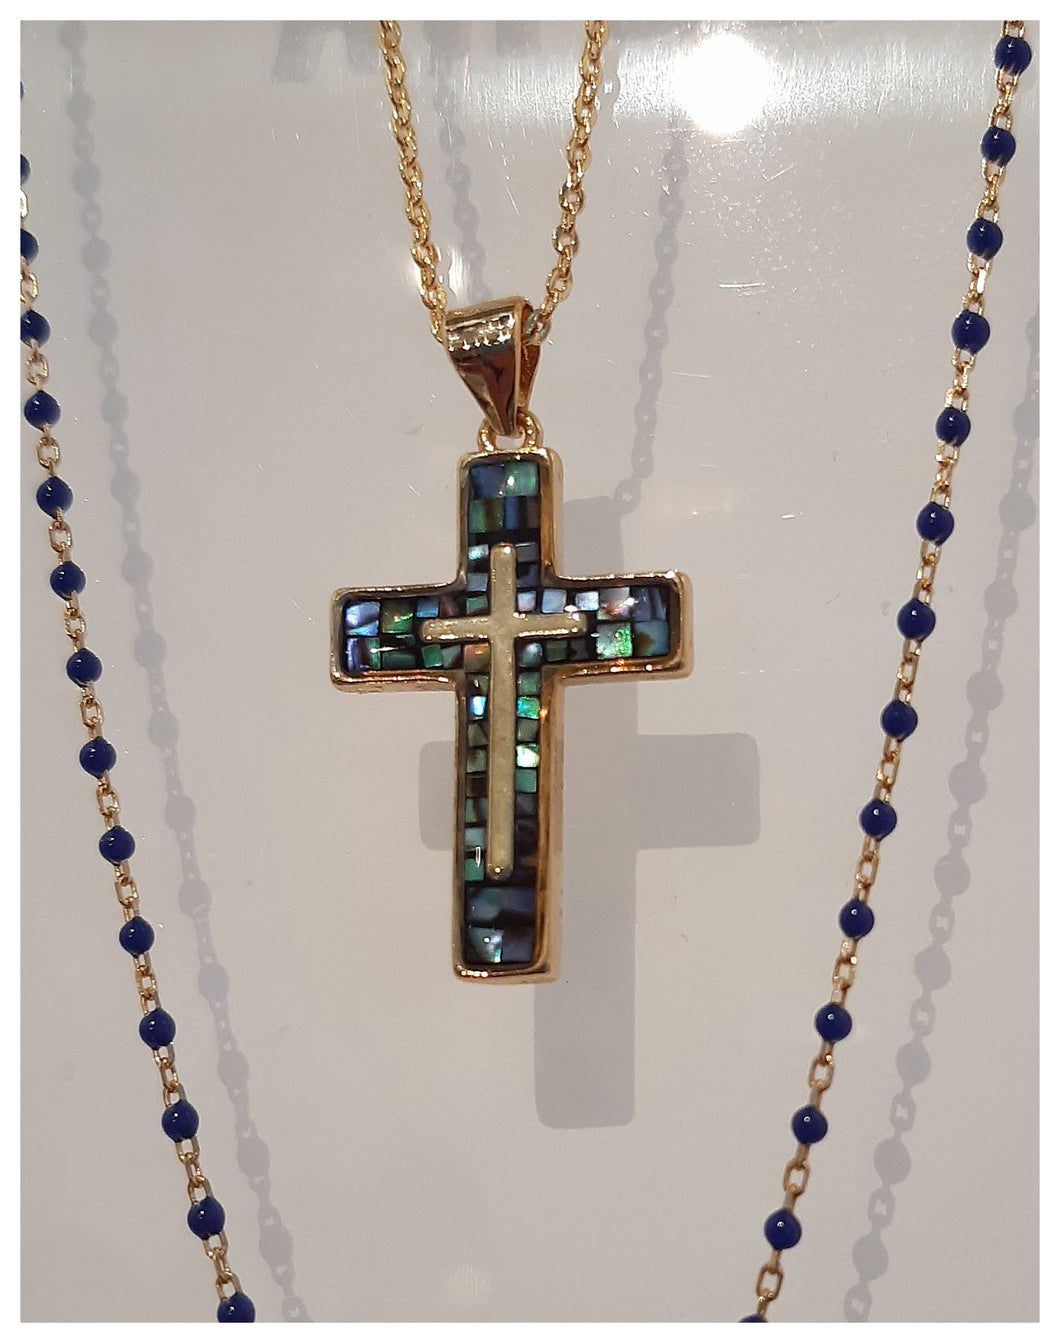 Très belle croix fantaisie avec nacre d'abalone - chaîne incluse - NEW